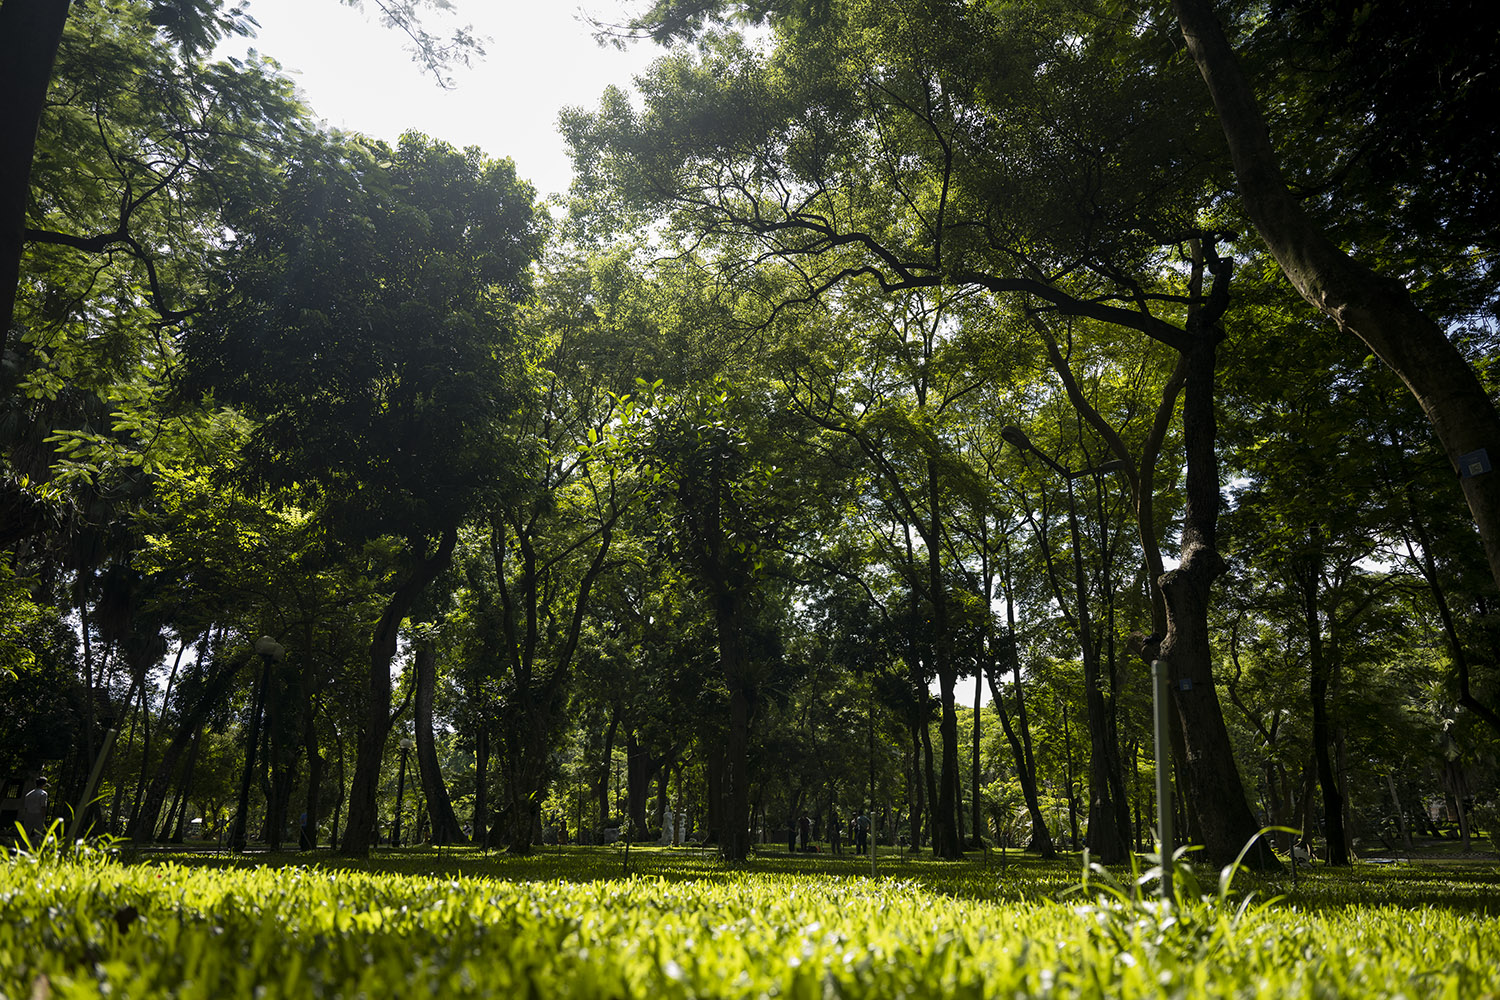 Một công viên có tuổi đời trên 100 năm tại Hà Nội, Vườn Bách thảo lâu nay được mệnh danh là một trong những "lá phổi xanh" của Thủ đô.